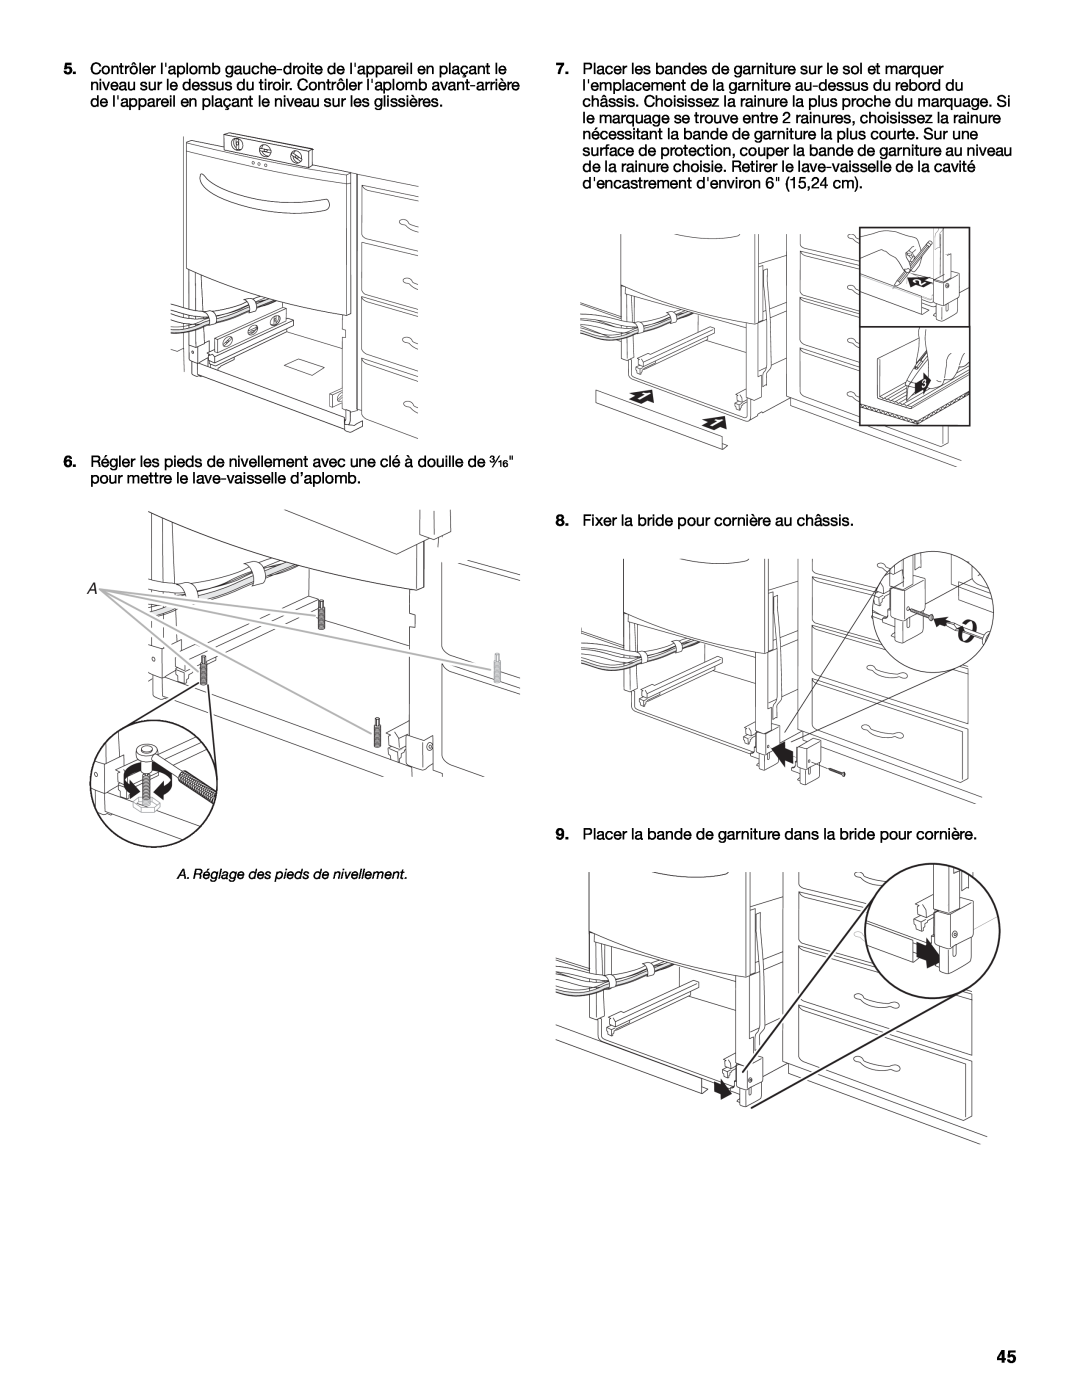 KitchenAid W10216167A installation instructions Fixer la bride pour cornière au châssis 